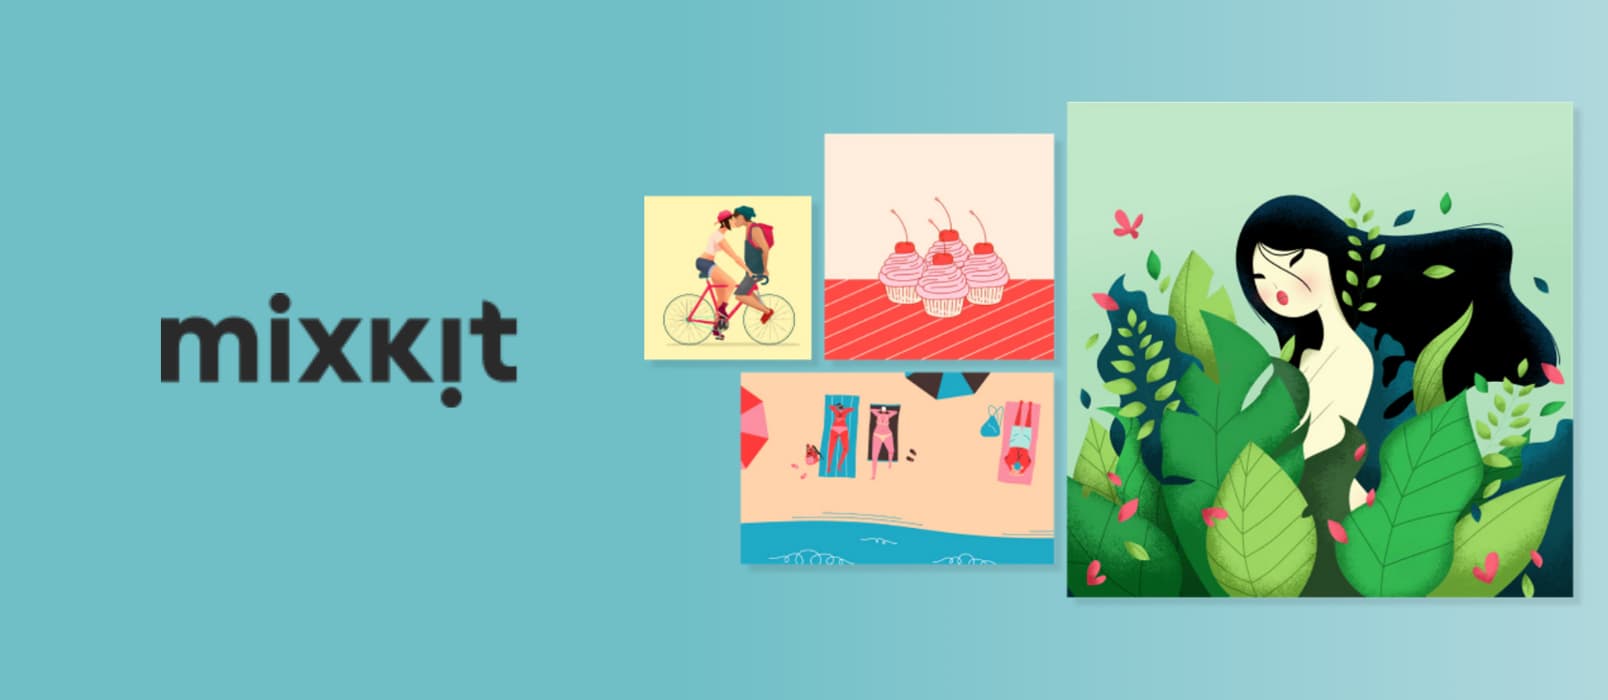 Mixkit 发布免费可商用的艺术画与插图平台 1